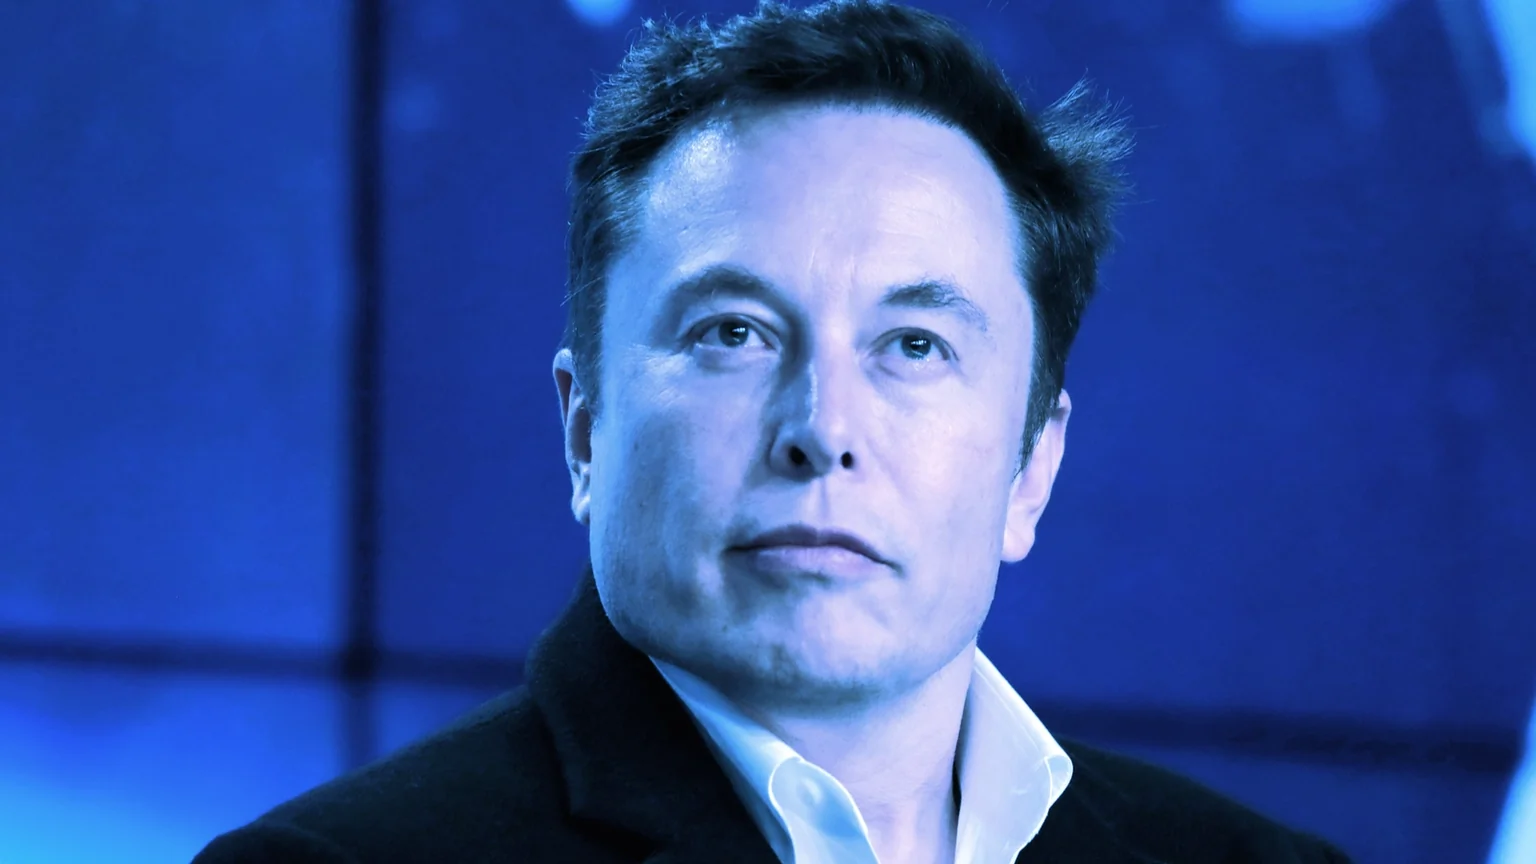 Elon Musk, CEO of Tesla. Image: Shutterstock